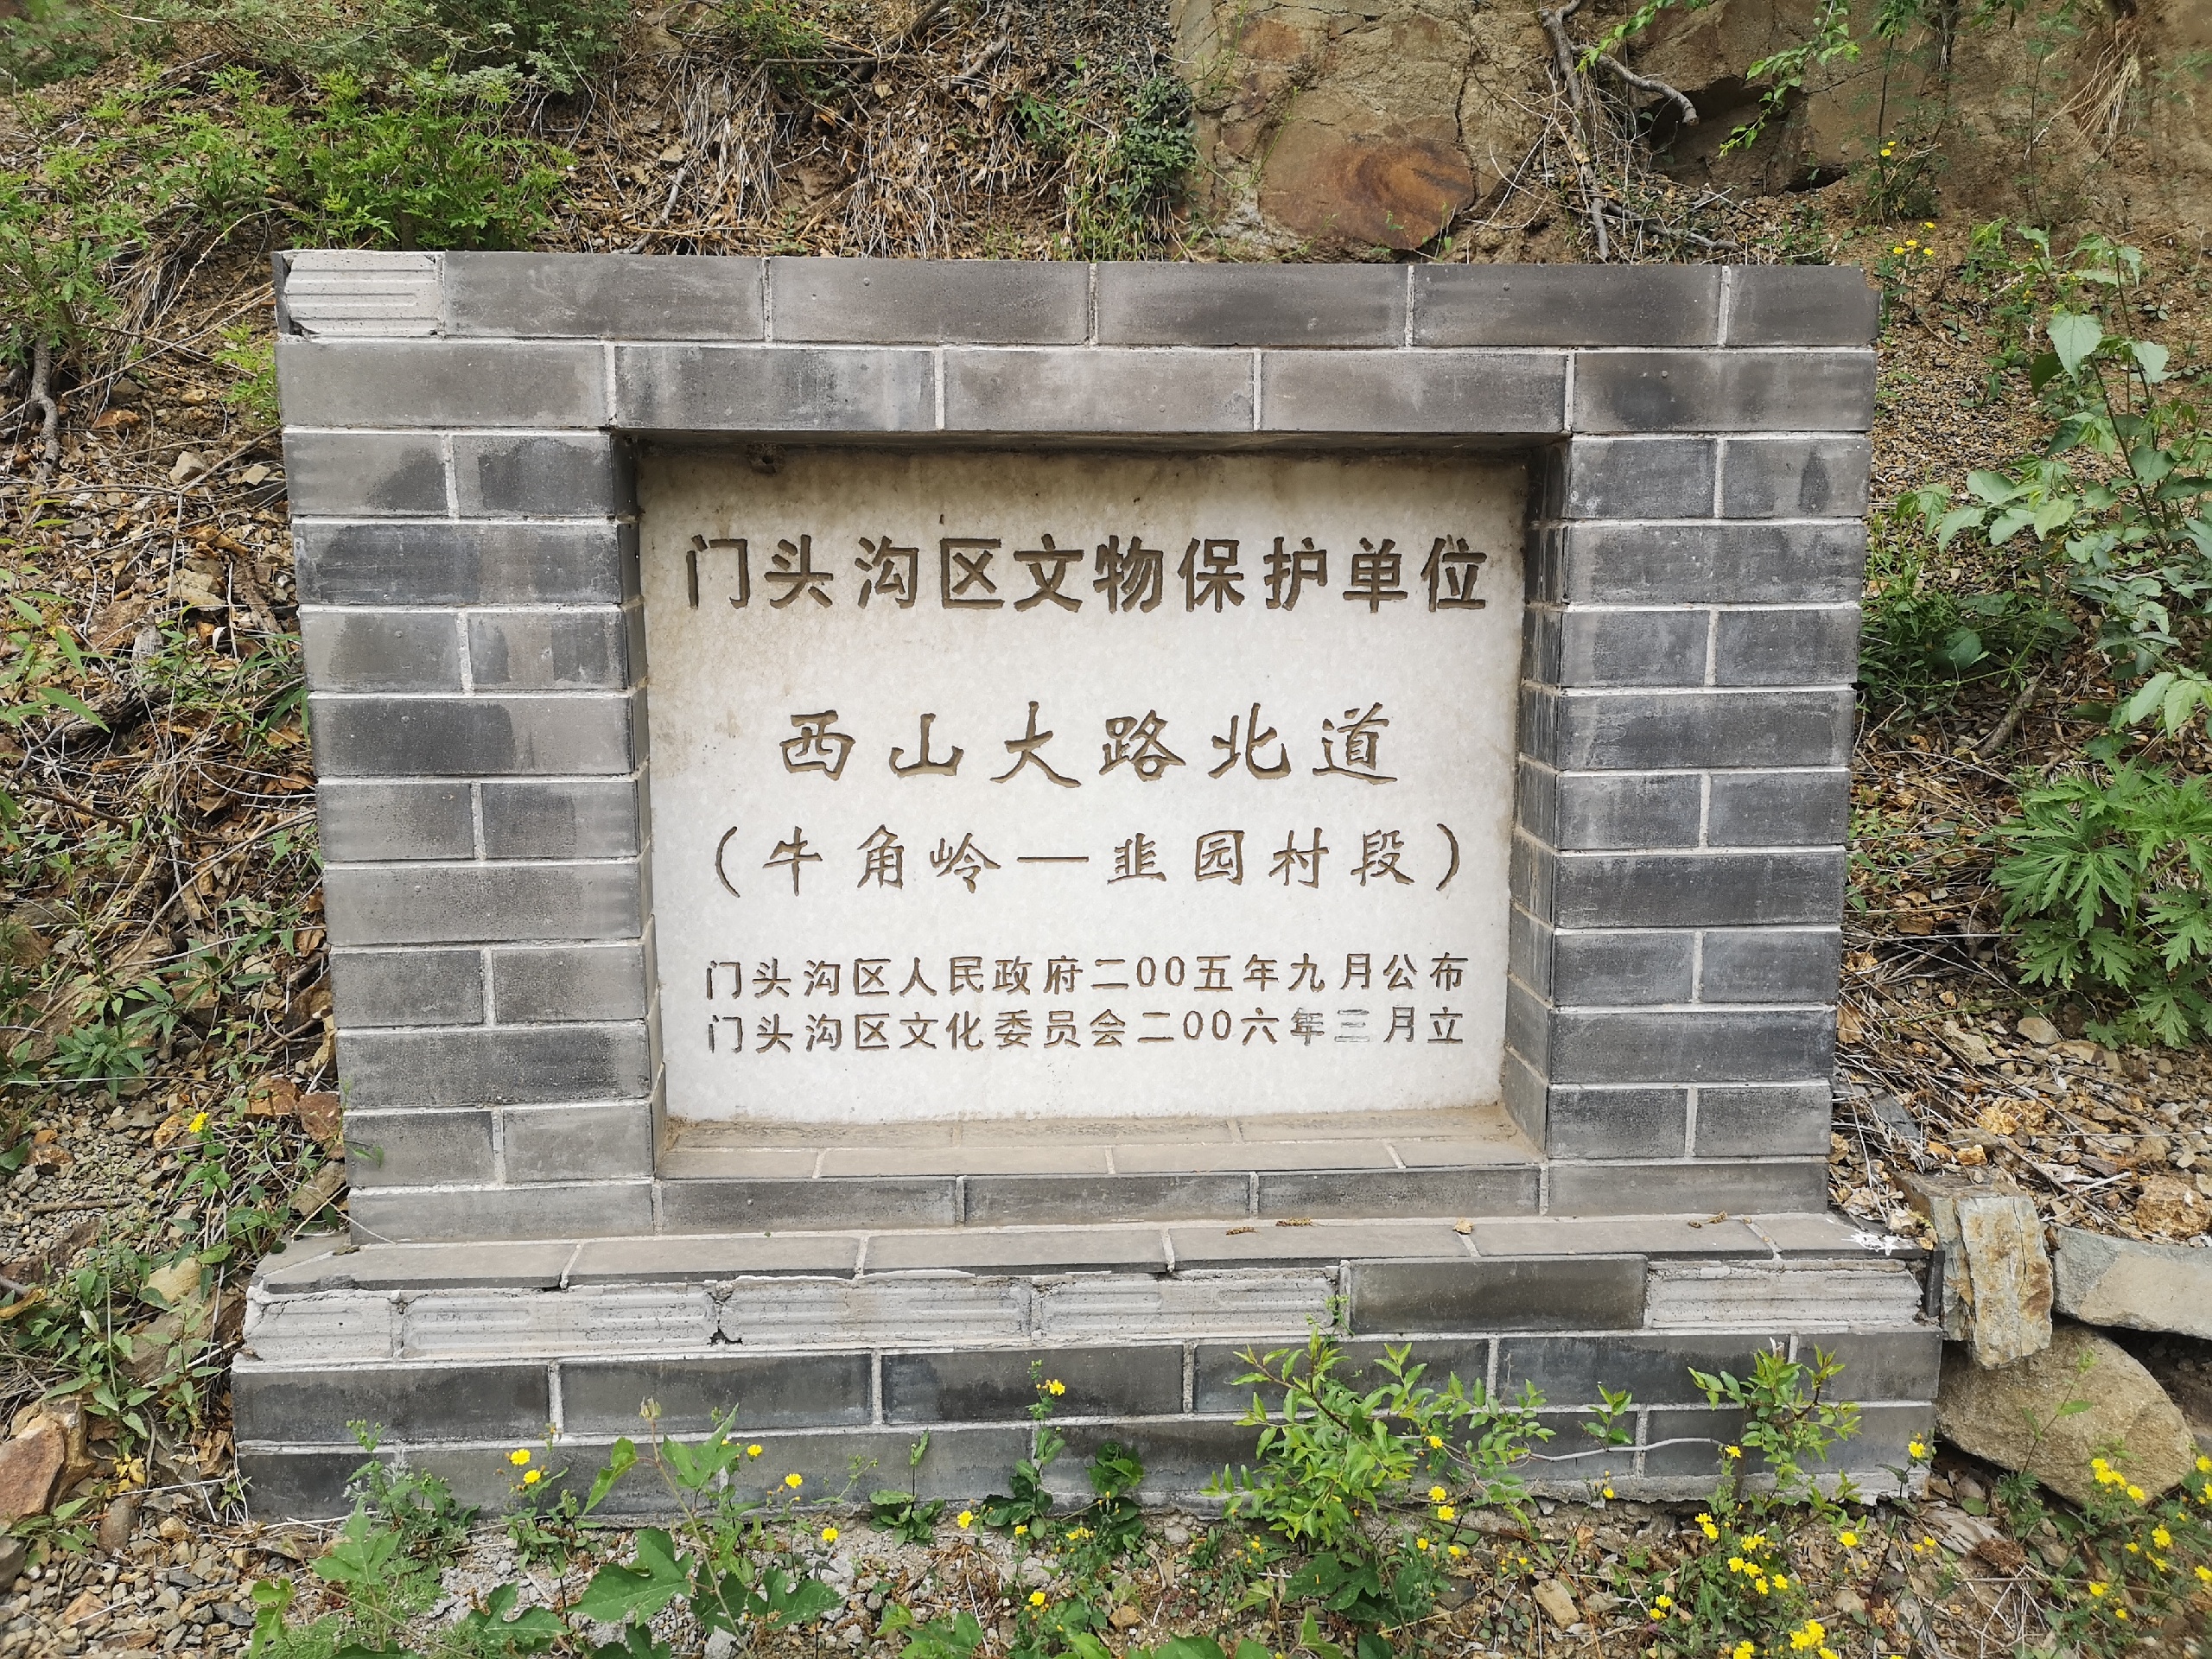 京西古道-马致远的故乡就在门头沟京西古道附近